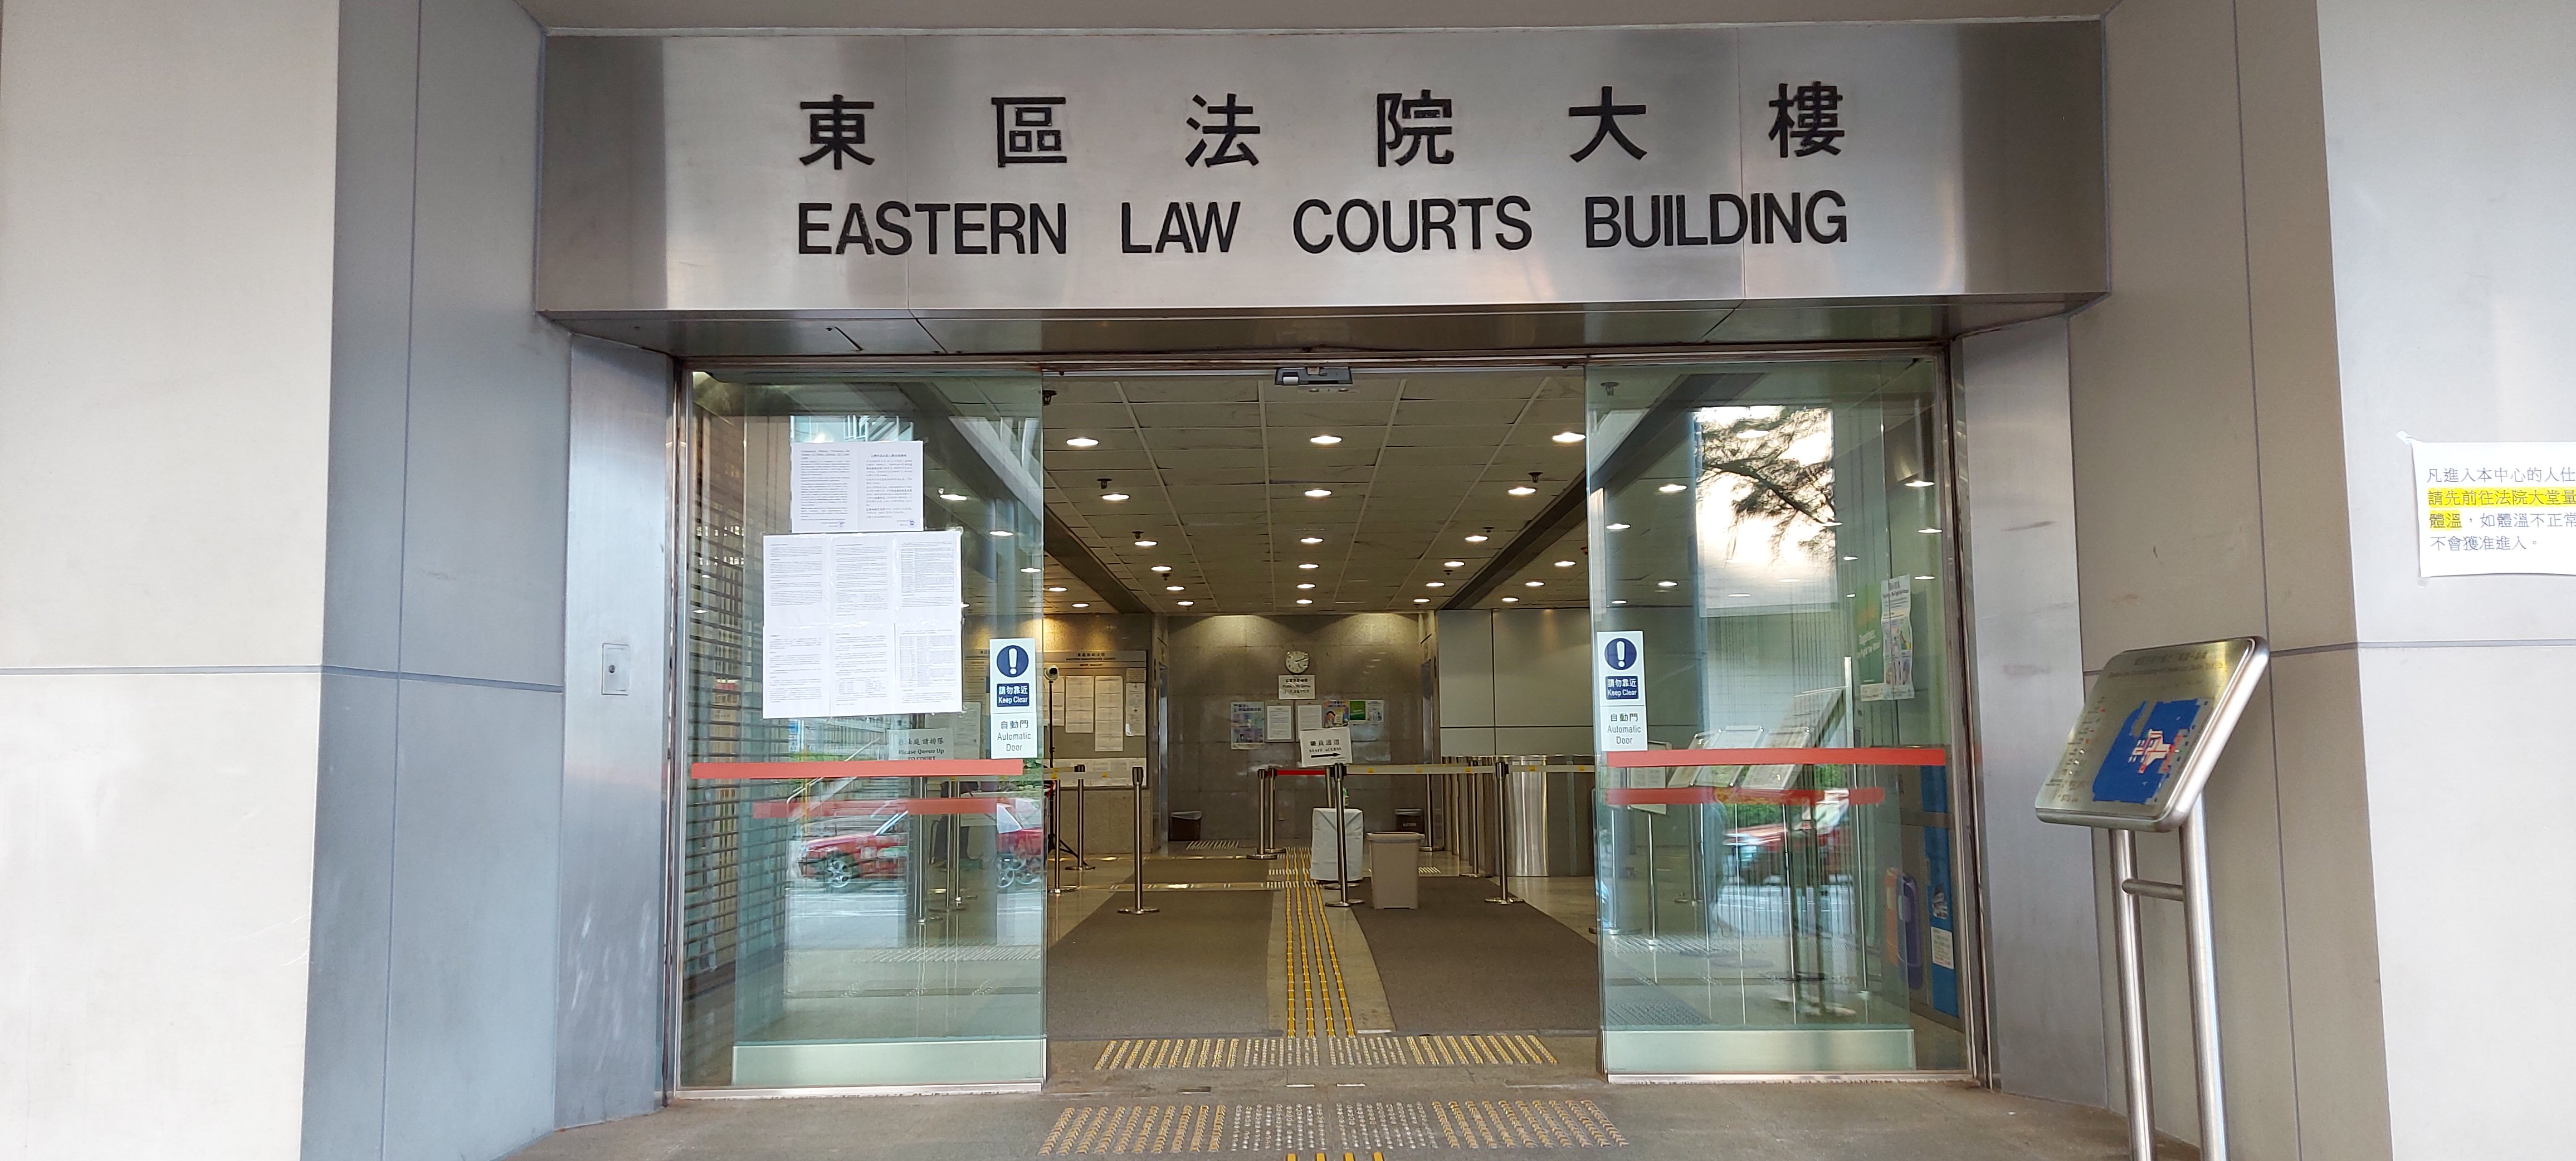 一對夫婦被控一項在公眾地方行為不檢罪A案件今日在東區裁判法院答辯C]資料圖片^